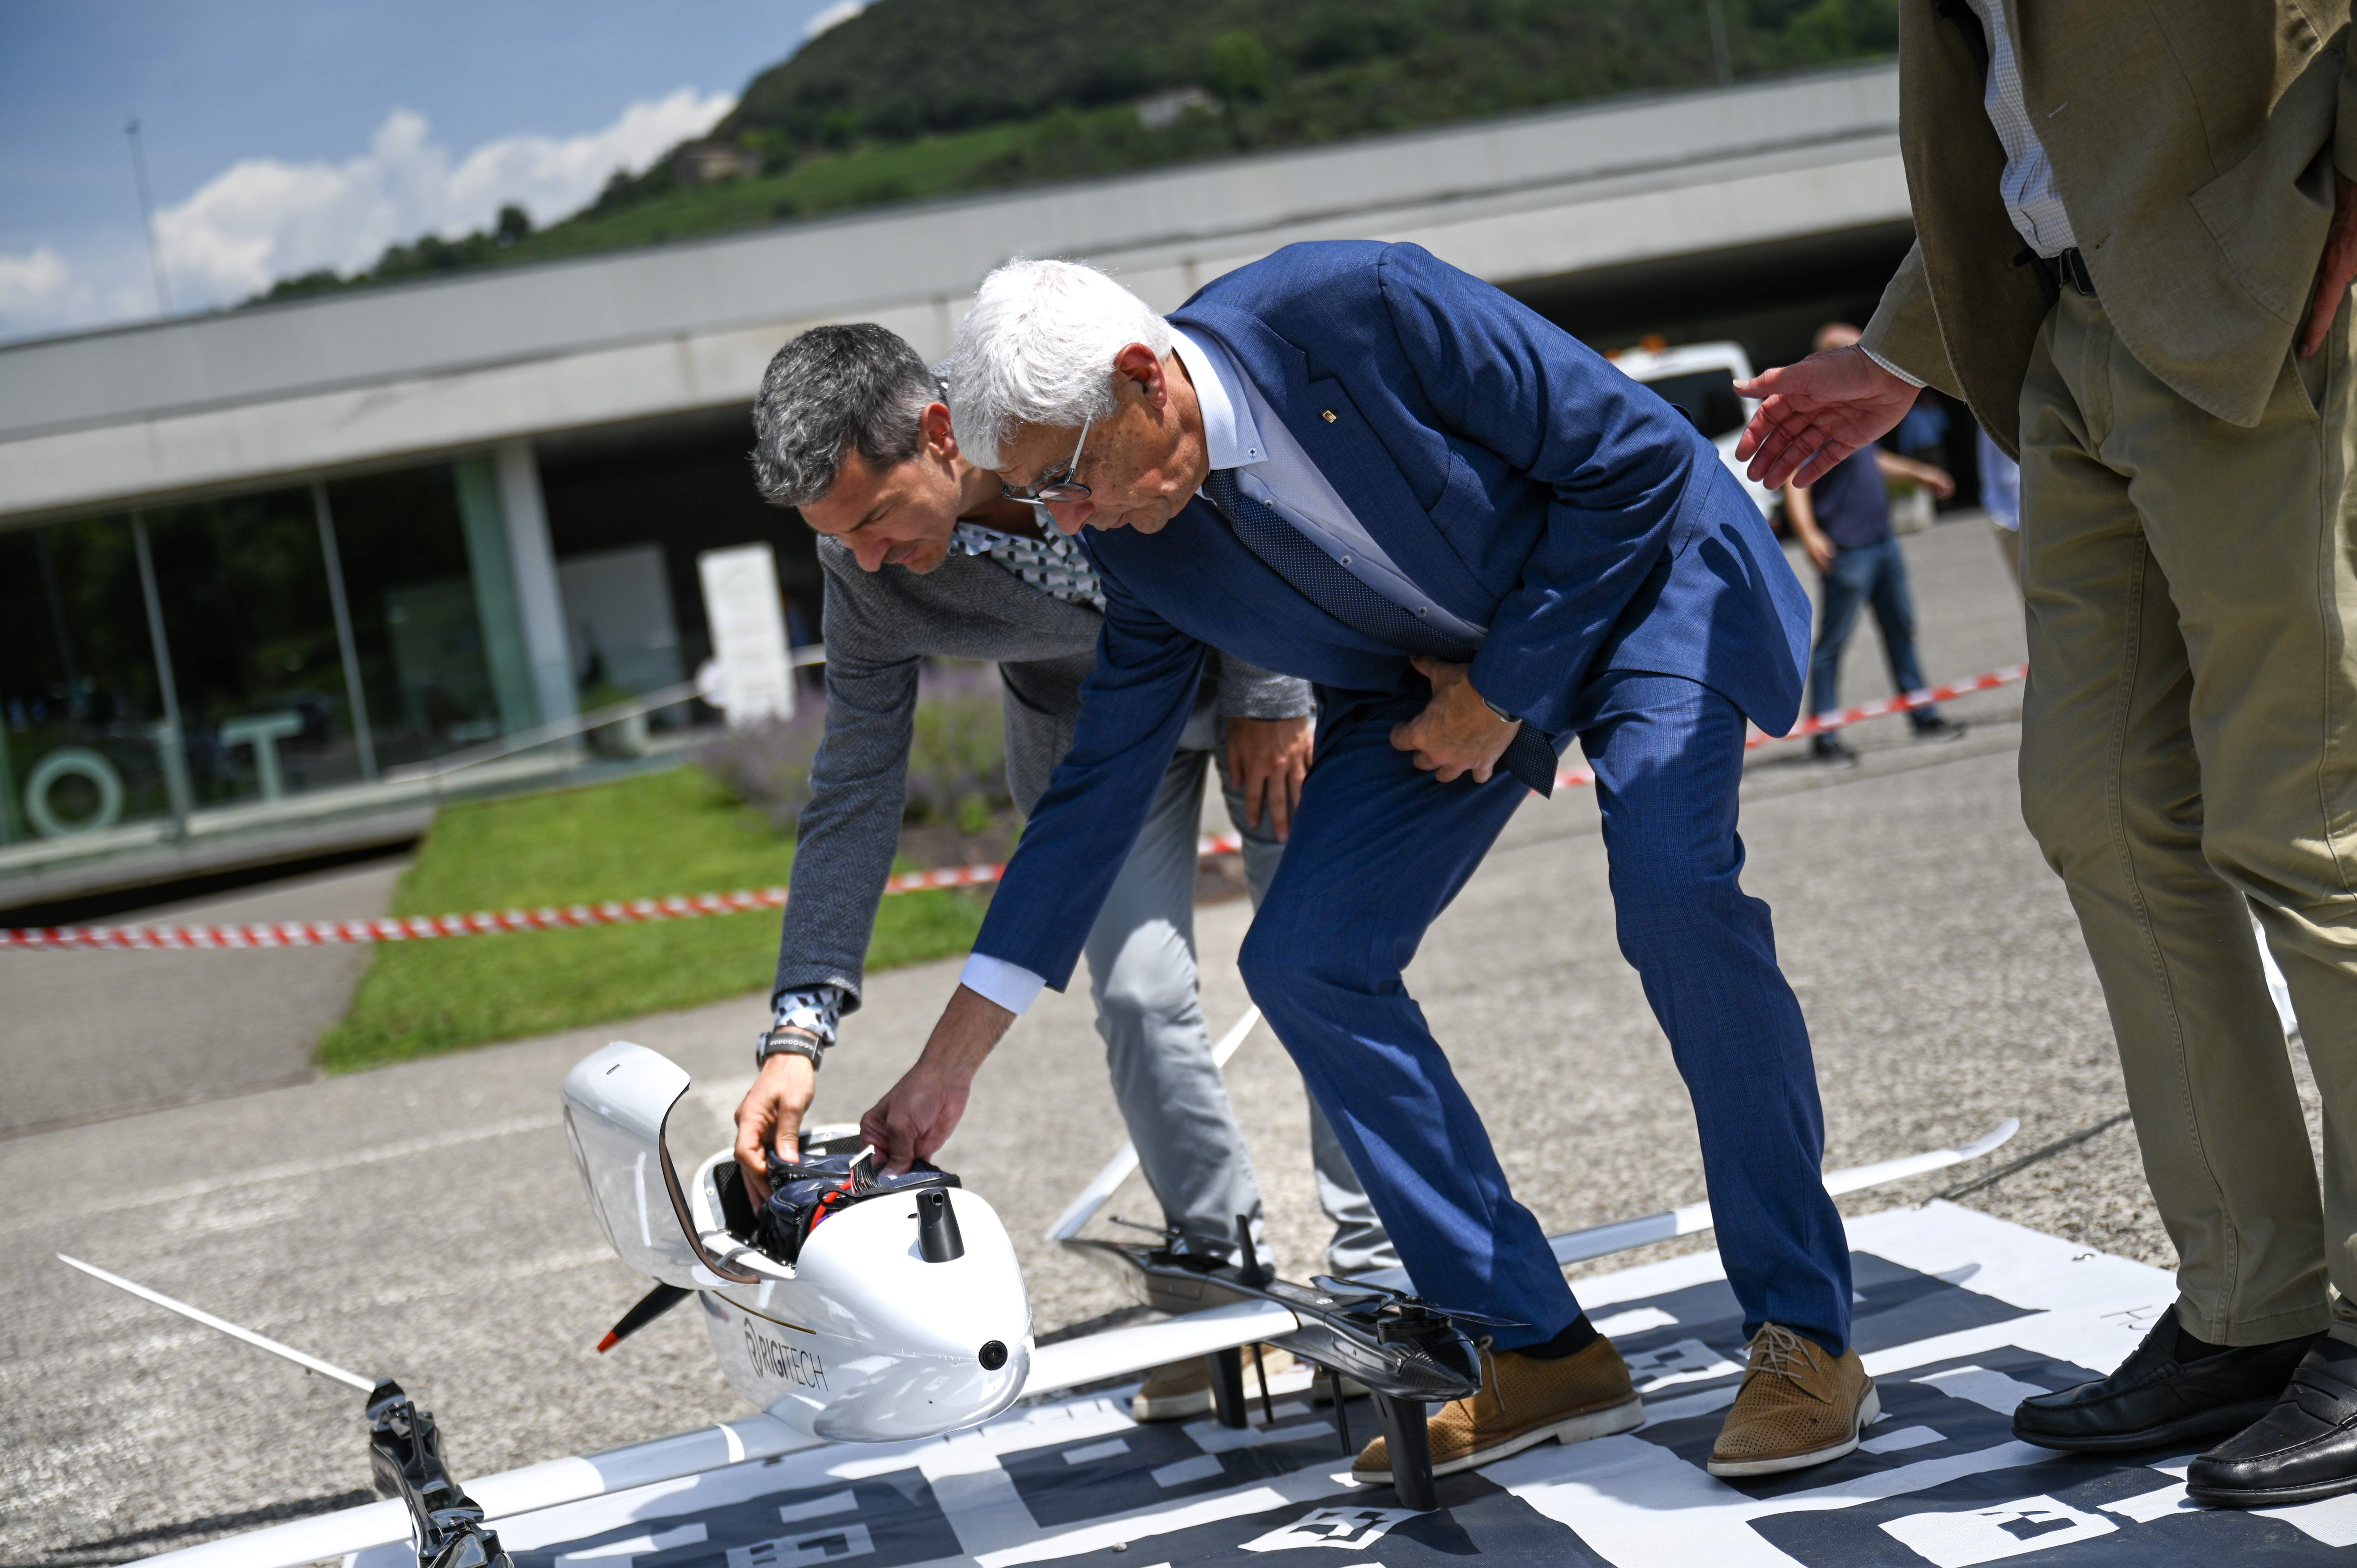 CatSalut utilitzarà drons per traslladar mostres biològiques i material sanitari